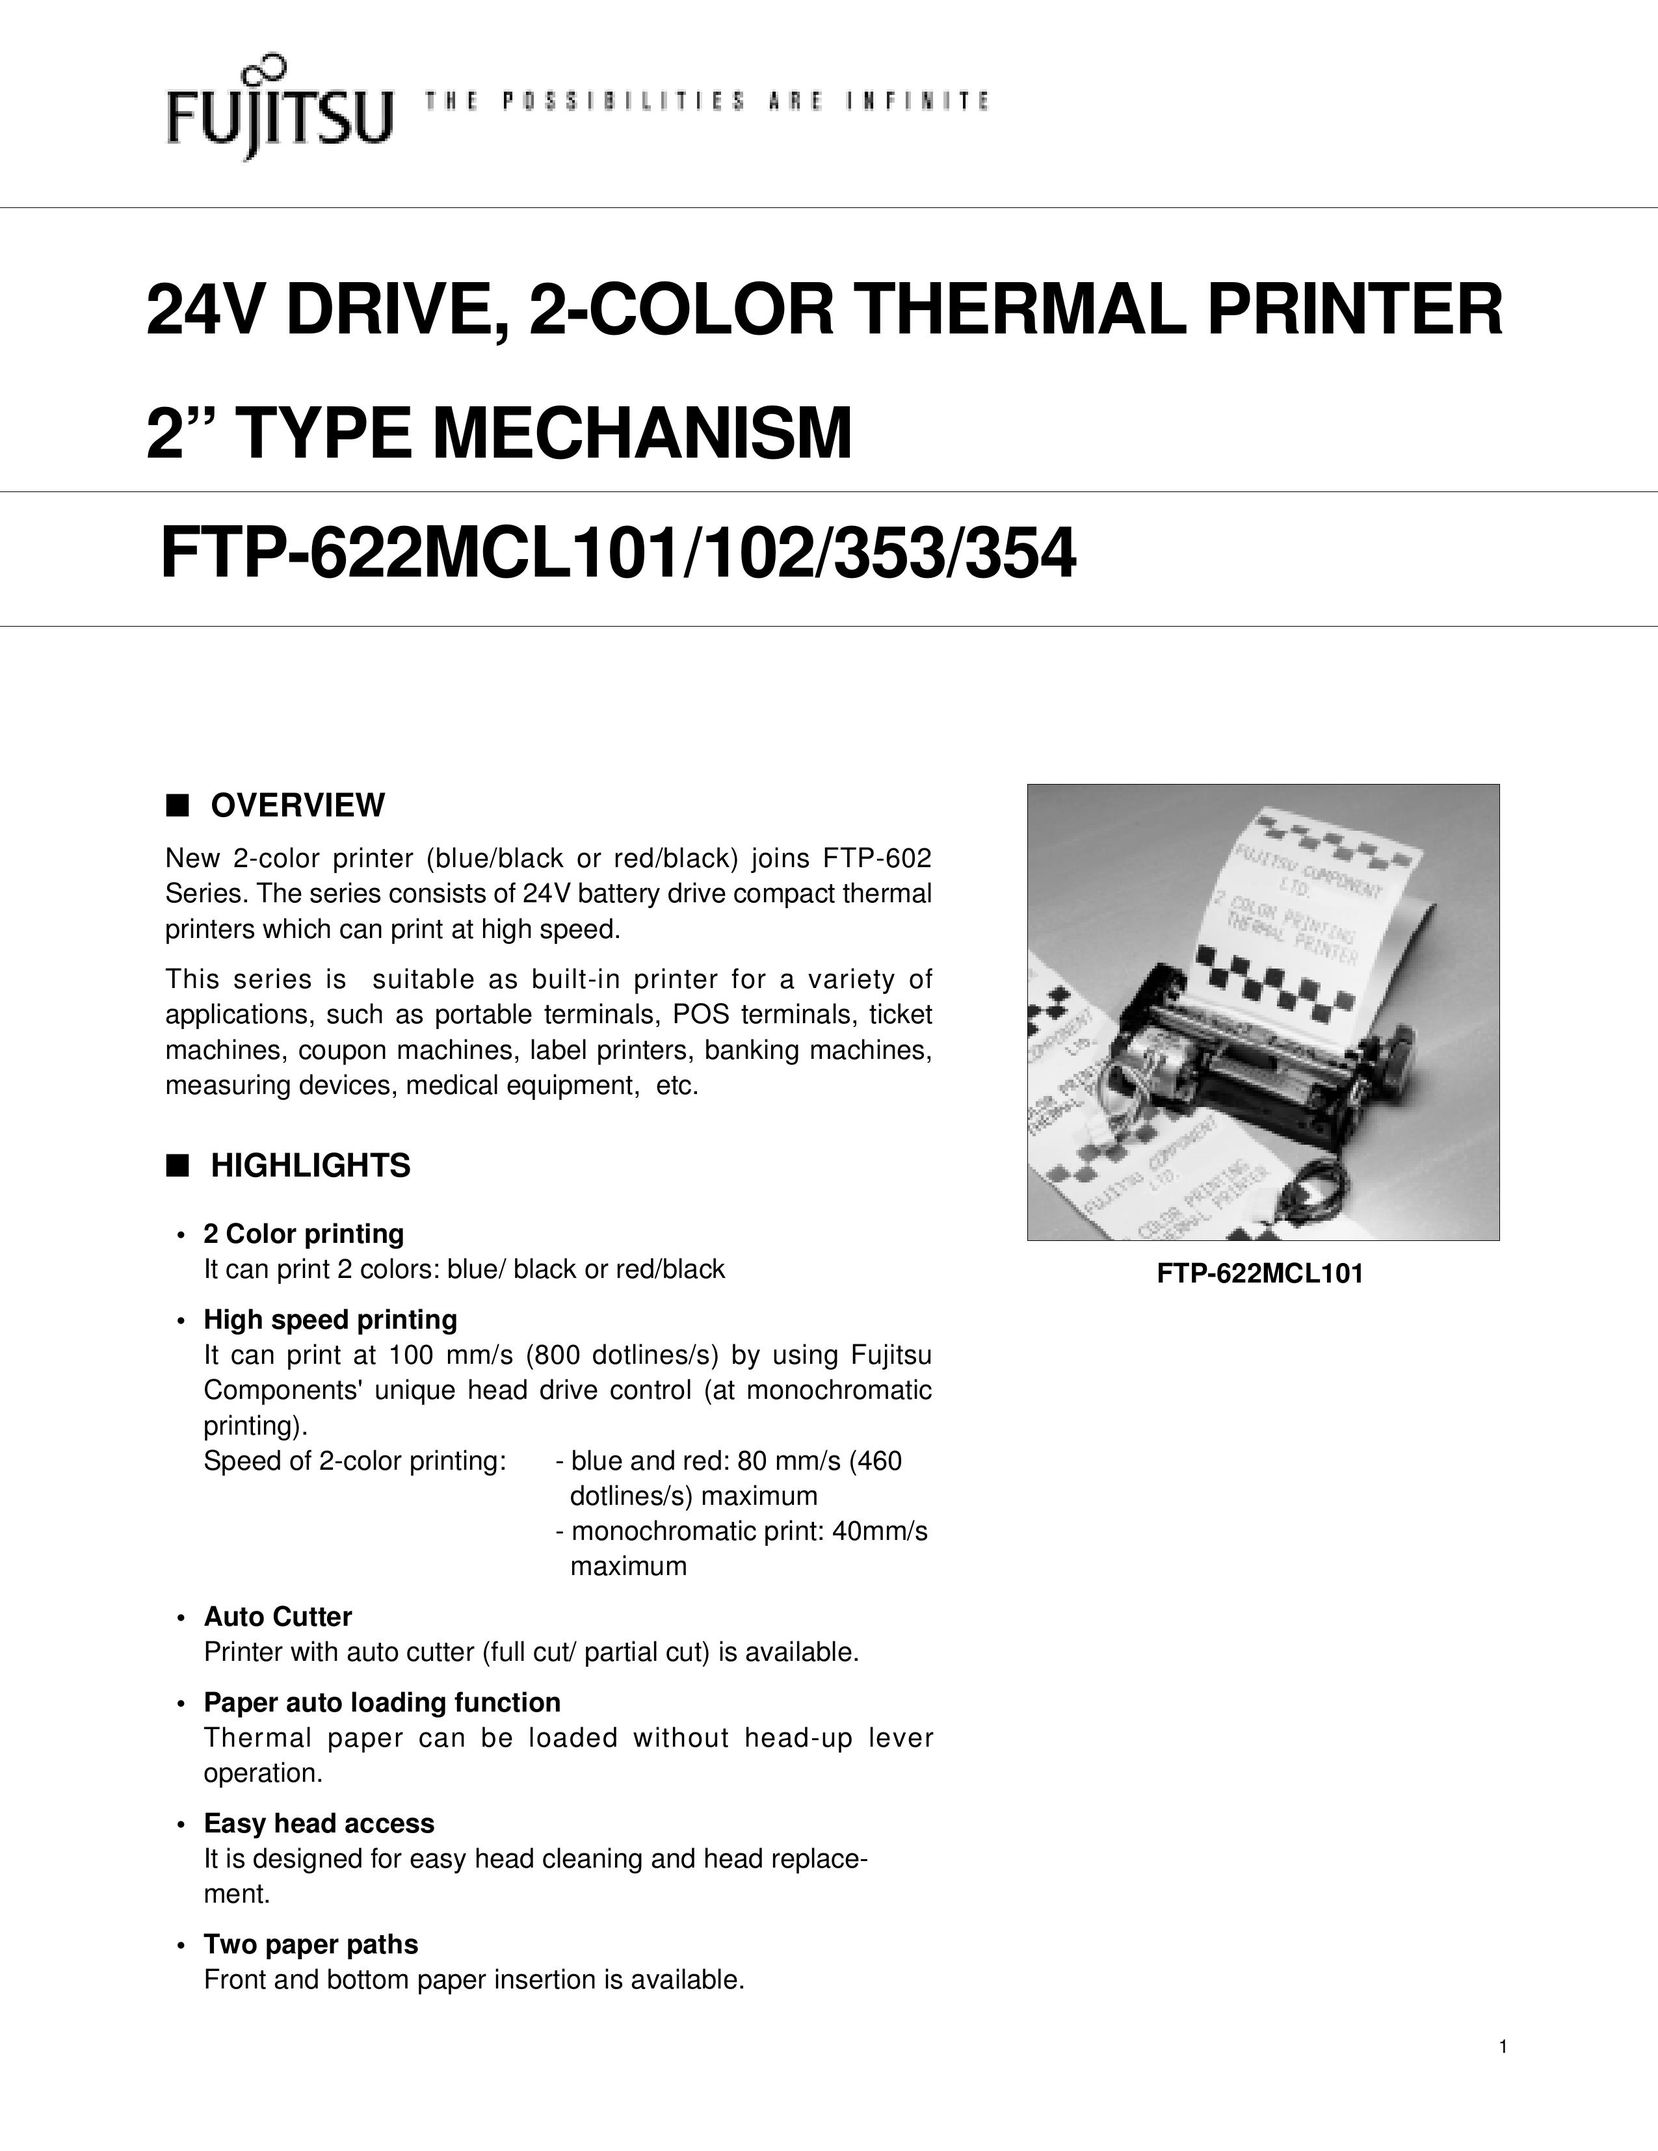 Fujitsu 354 Printer User Manual